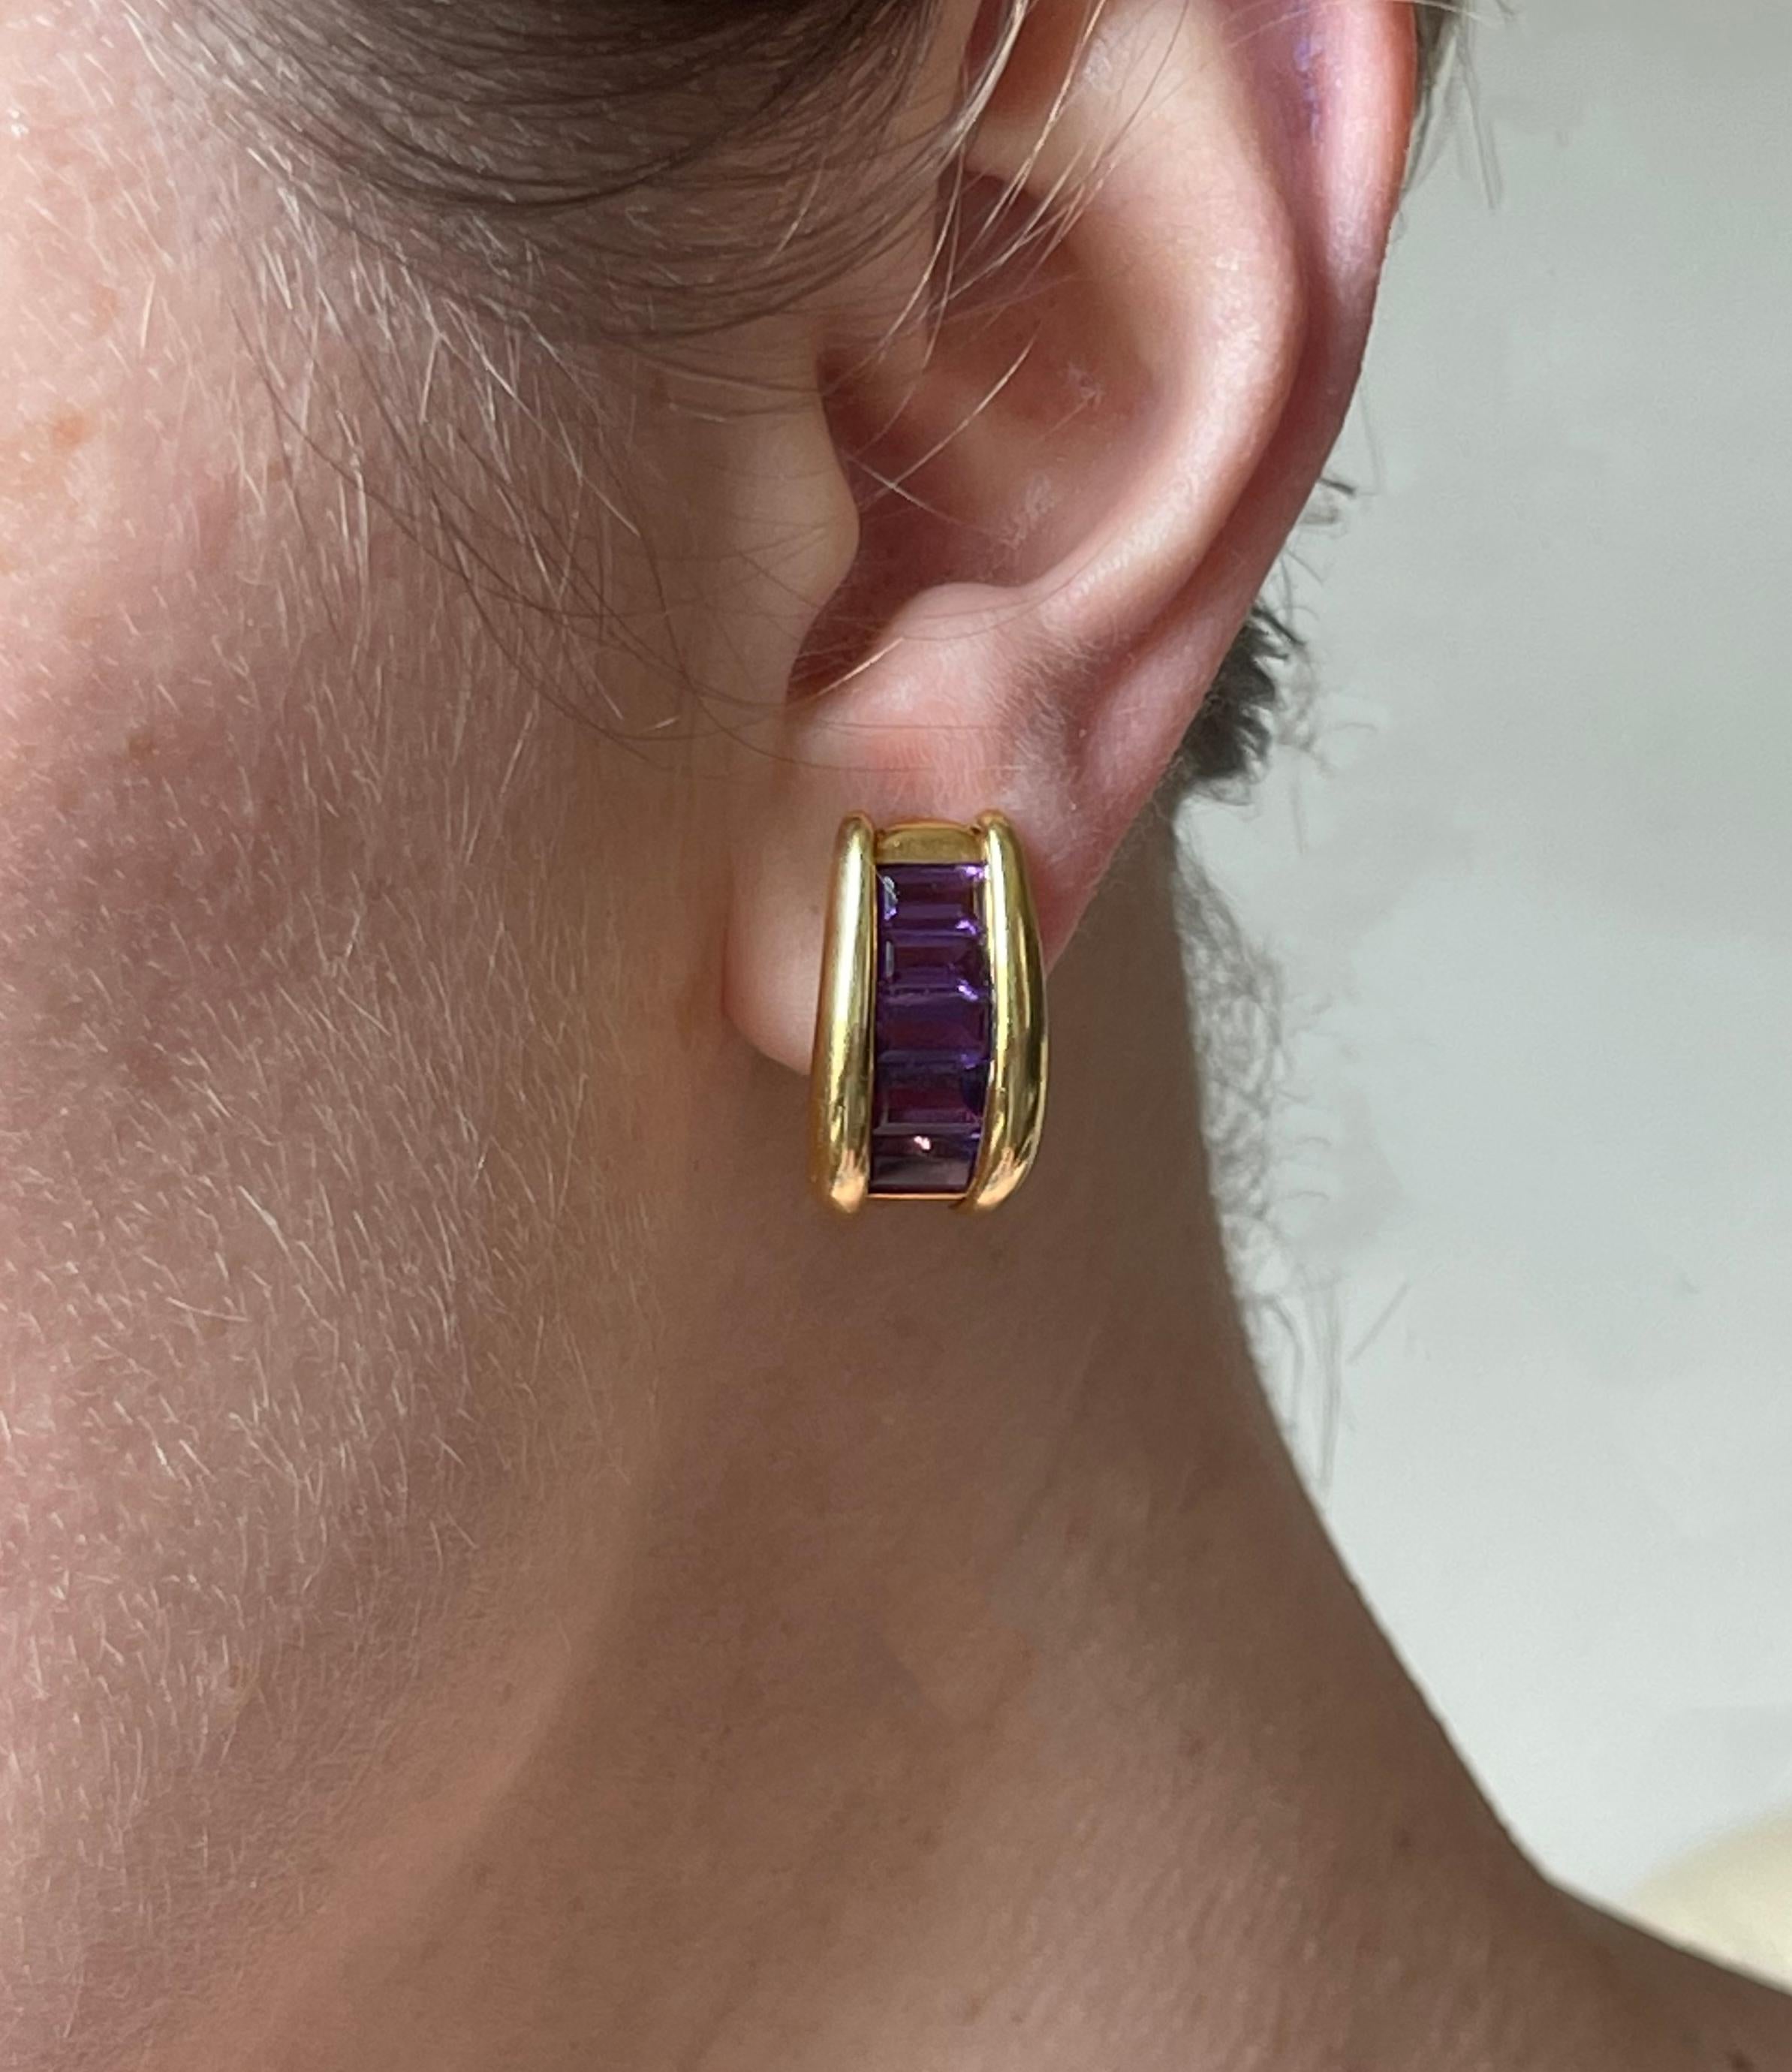 Pair of 18k gold Italian made half hoop earrings, with baguette cut amethyst. Earrings measure 7/8